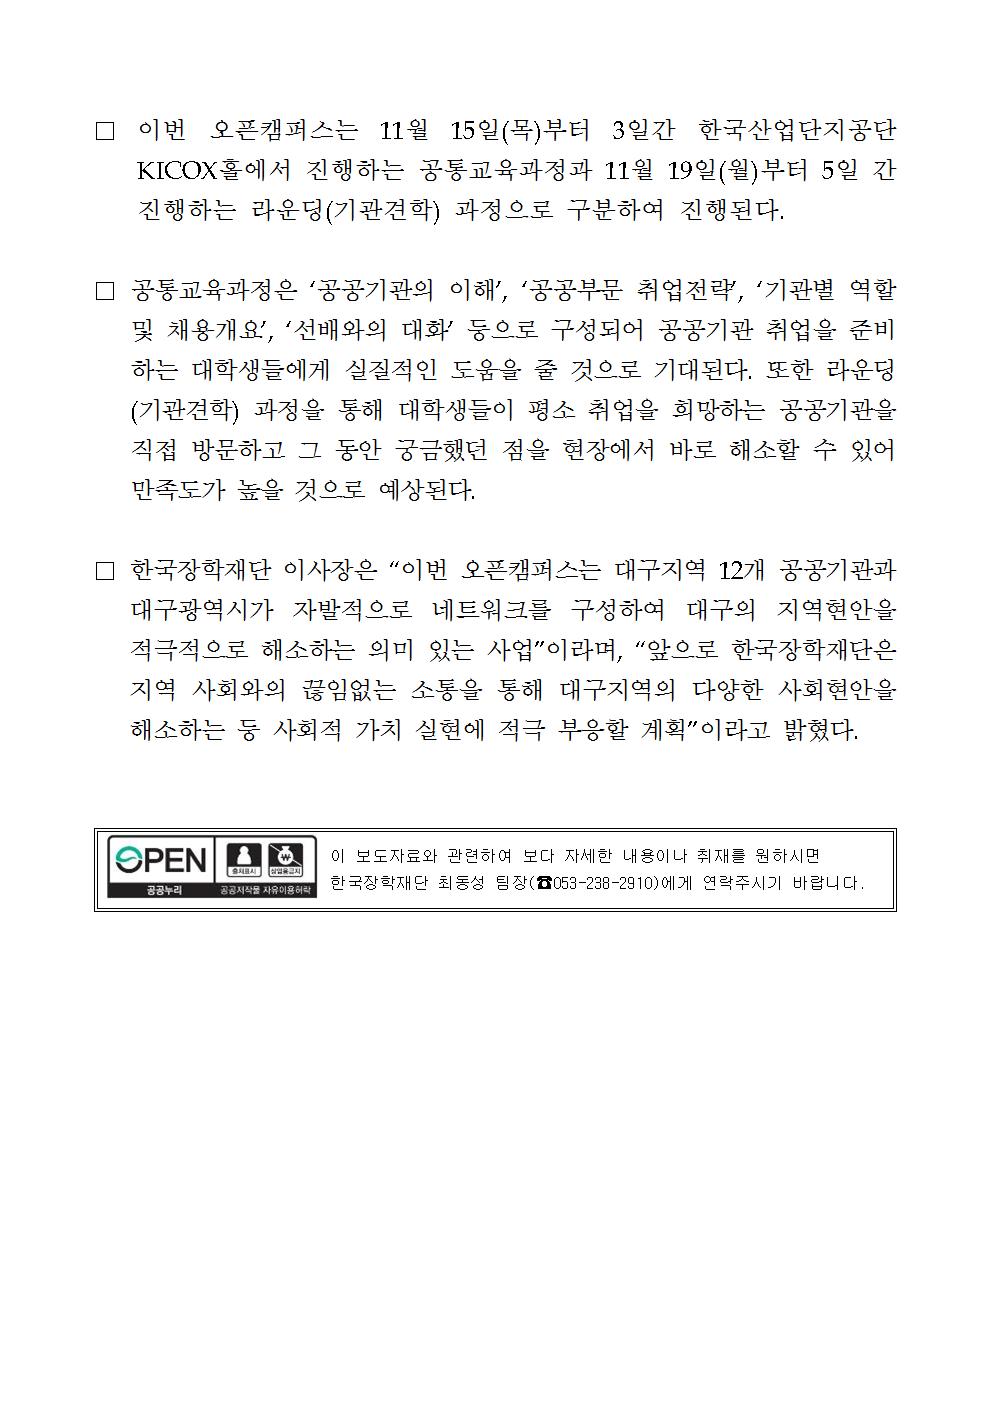 11-15(목)[보도자료] 한국장학재단, 2018 지역인재 역량강화 오픈캠퍼스 개최002.jpg